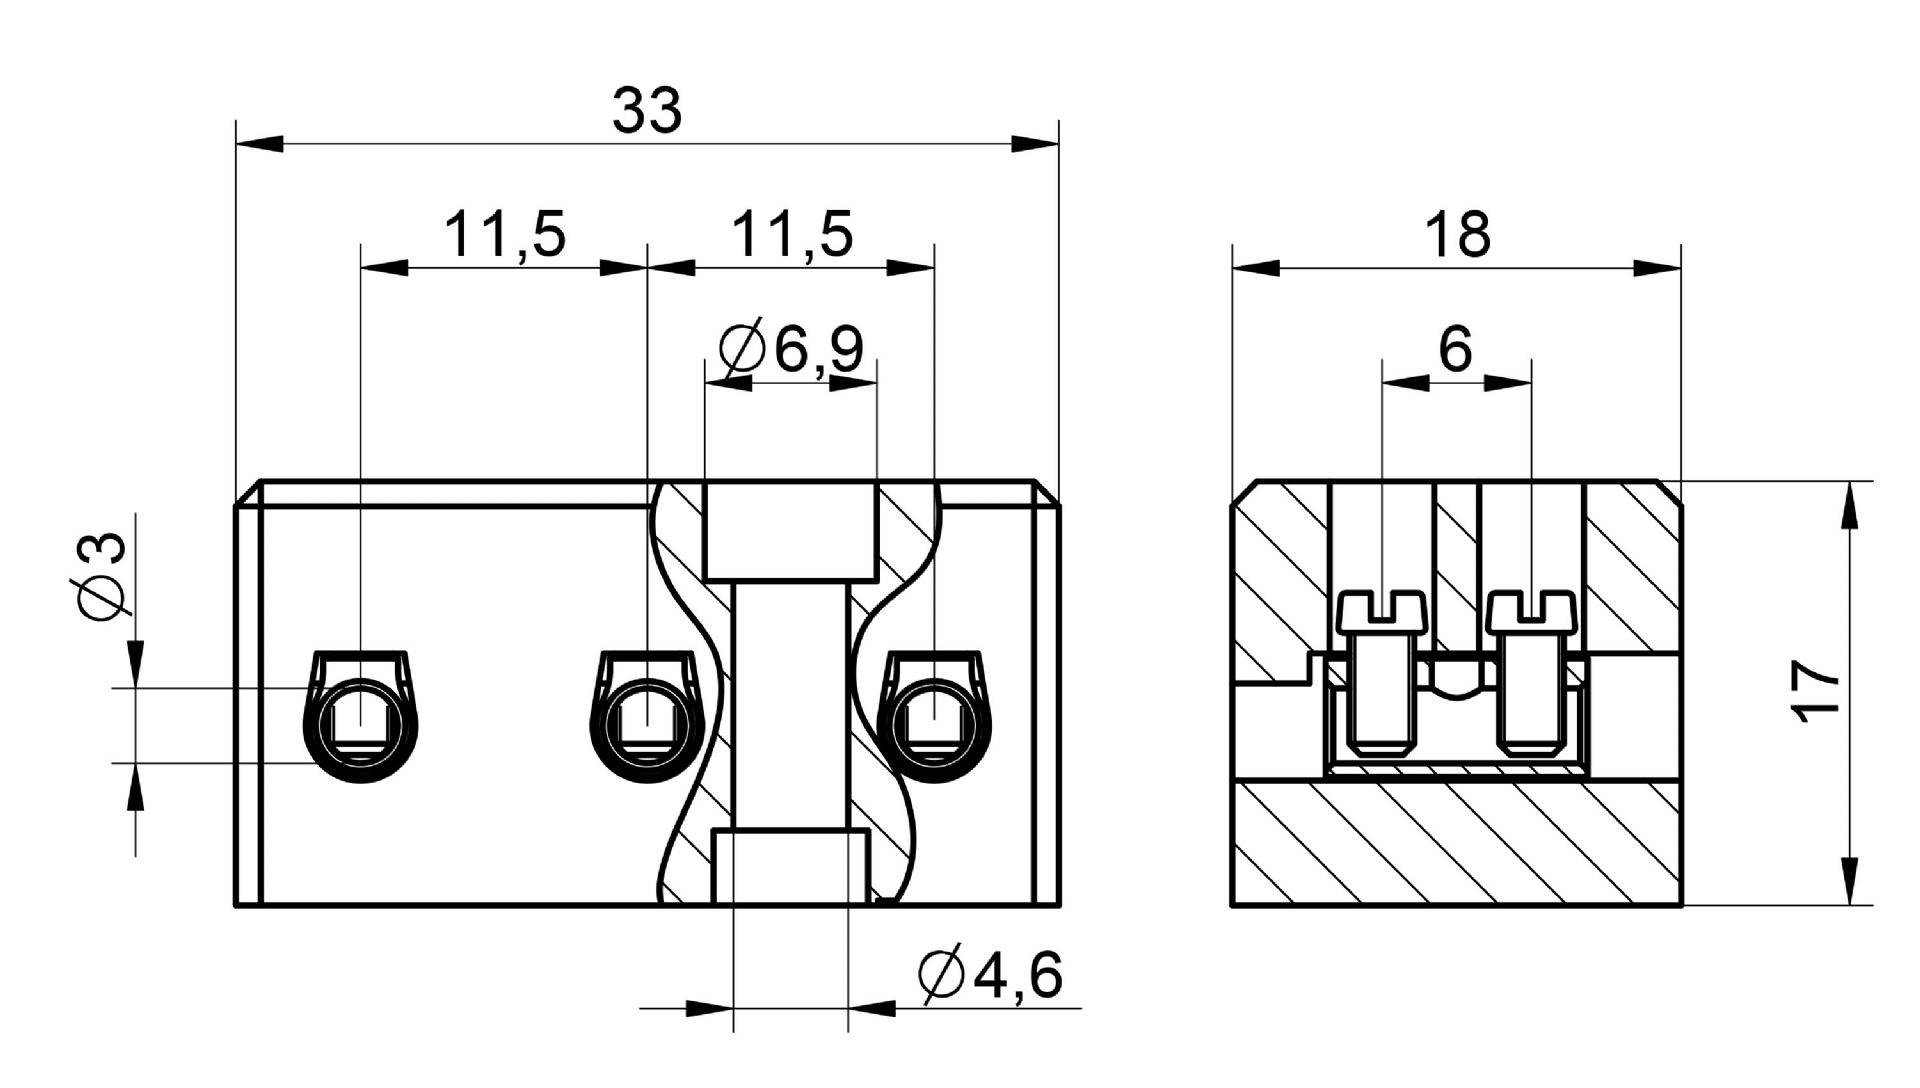 Venta/distribución/mayoristaRegletas con aislante cerámico para realizar conexiones eléctricas con conductores de cobre en instalaciones y/o aparatos con temperatura de trabajo elevadas B4-3E